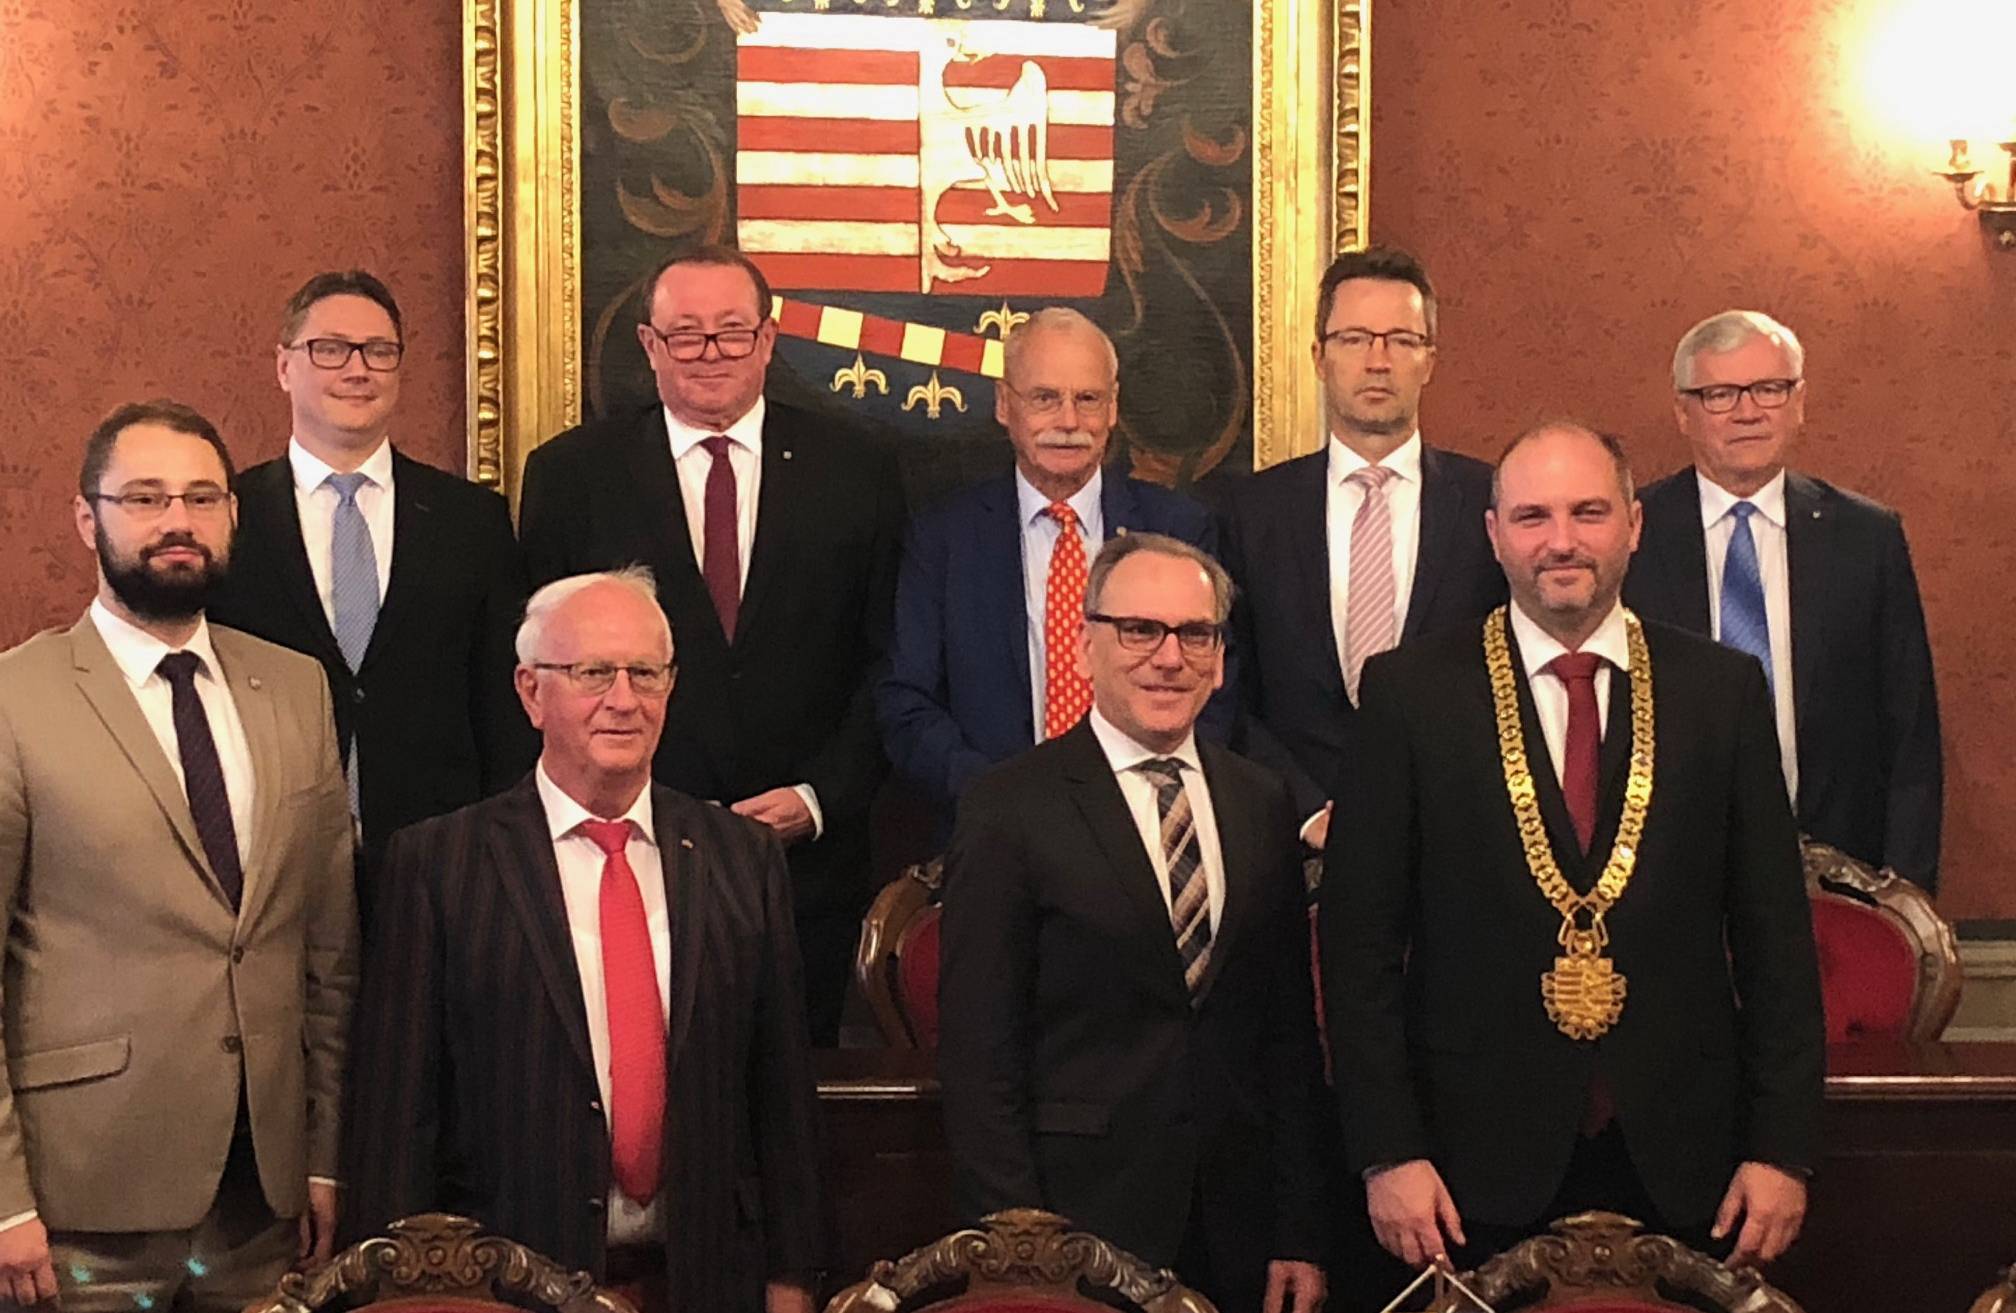  Die Wuppertaler Delegation mit Oberbürgermeister Andreas Mucke im vergangenen Jahr 2019 in Kosice.  